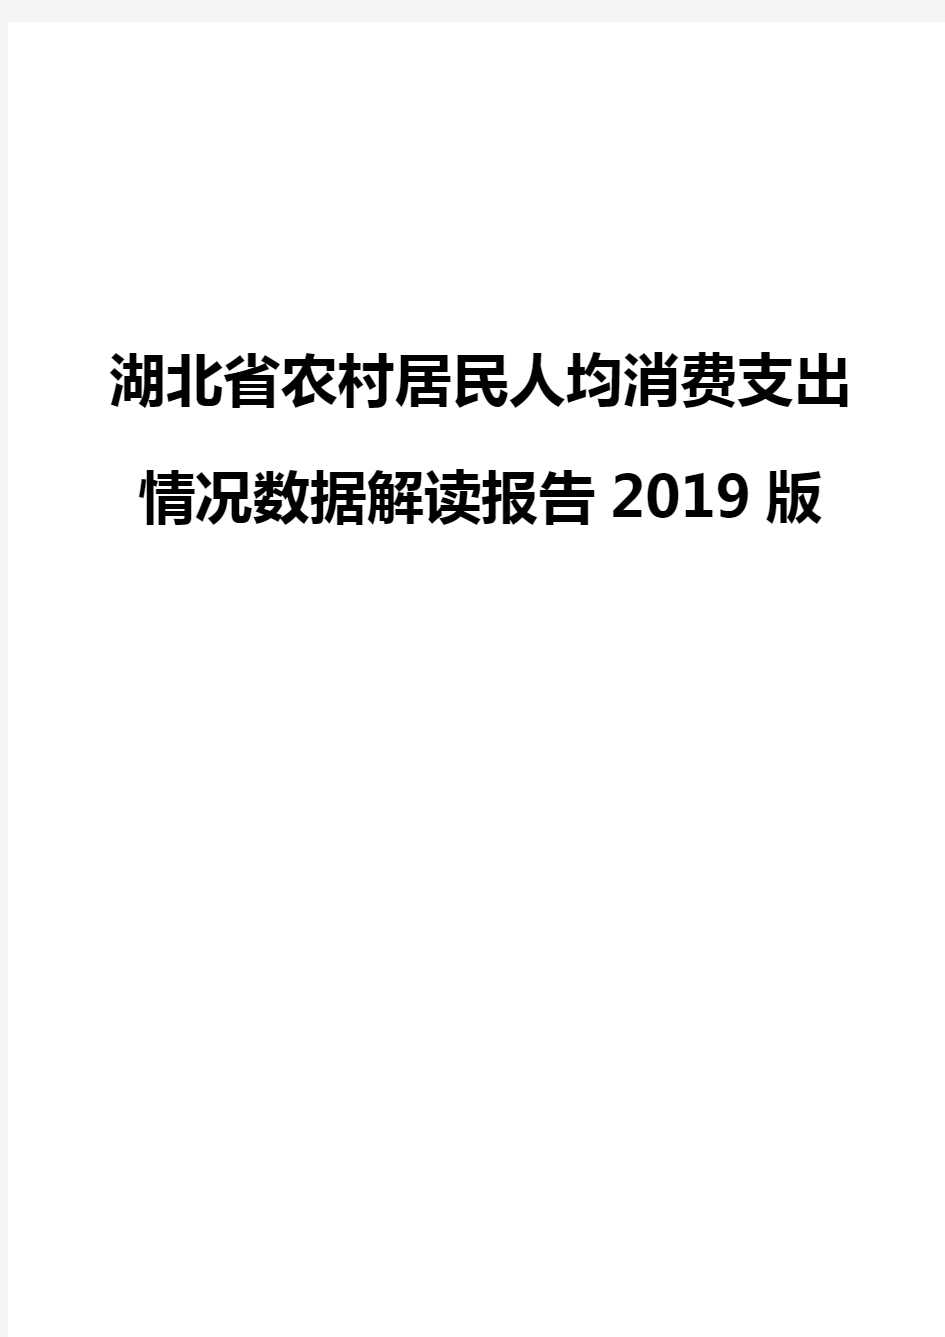 湖北省农村居民人均消费支出情况数据解读报告2019版